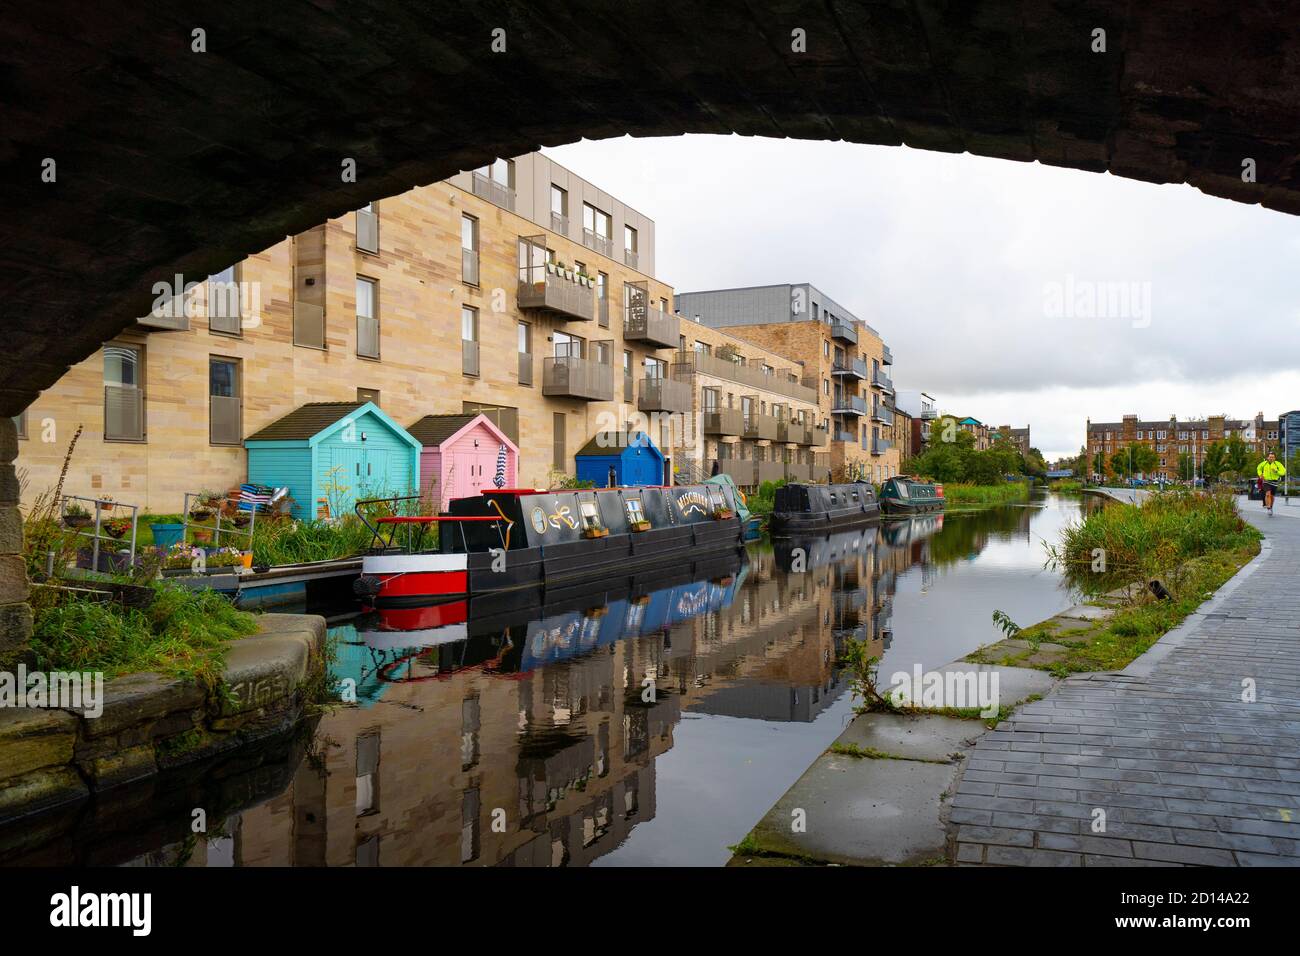 Moderne Wohnblocks und schmale Boote, die am Union Canal bei Fountainbridge in Edinburgh, Schottland, Großbritannien, festgemacht sind Stockfoto